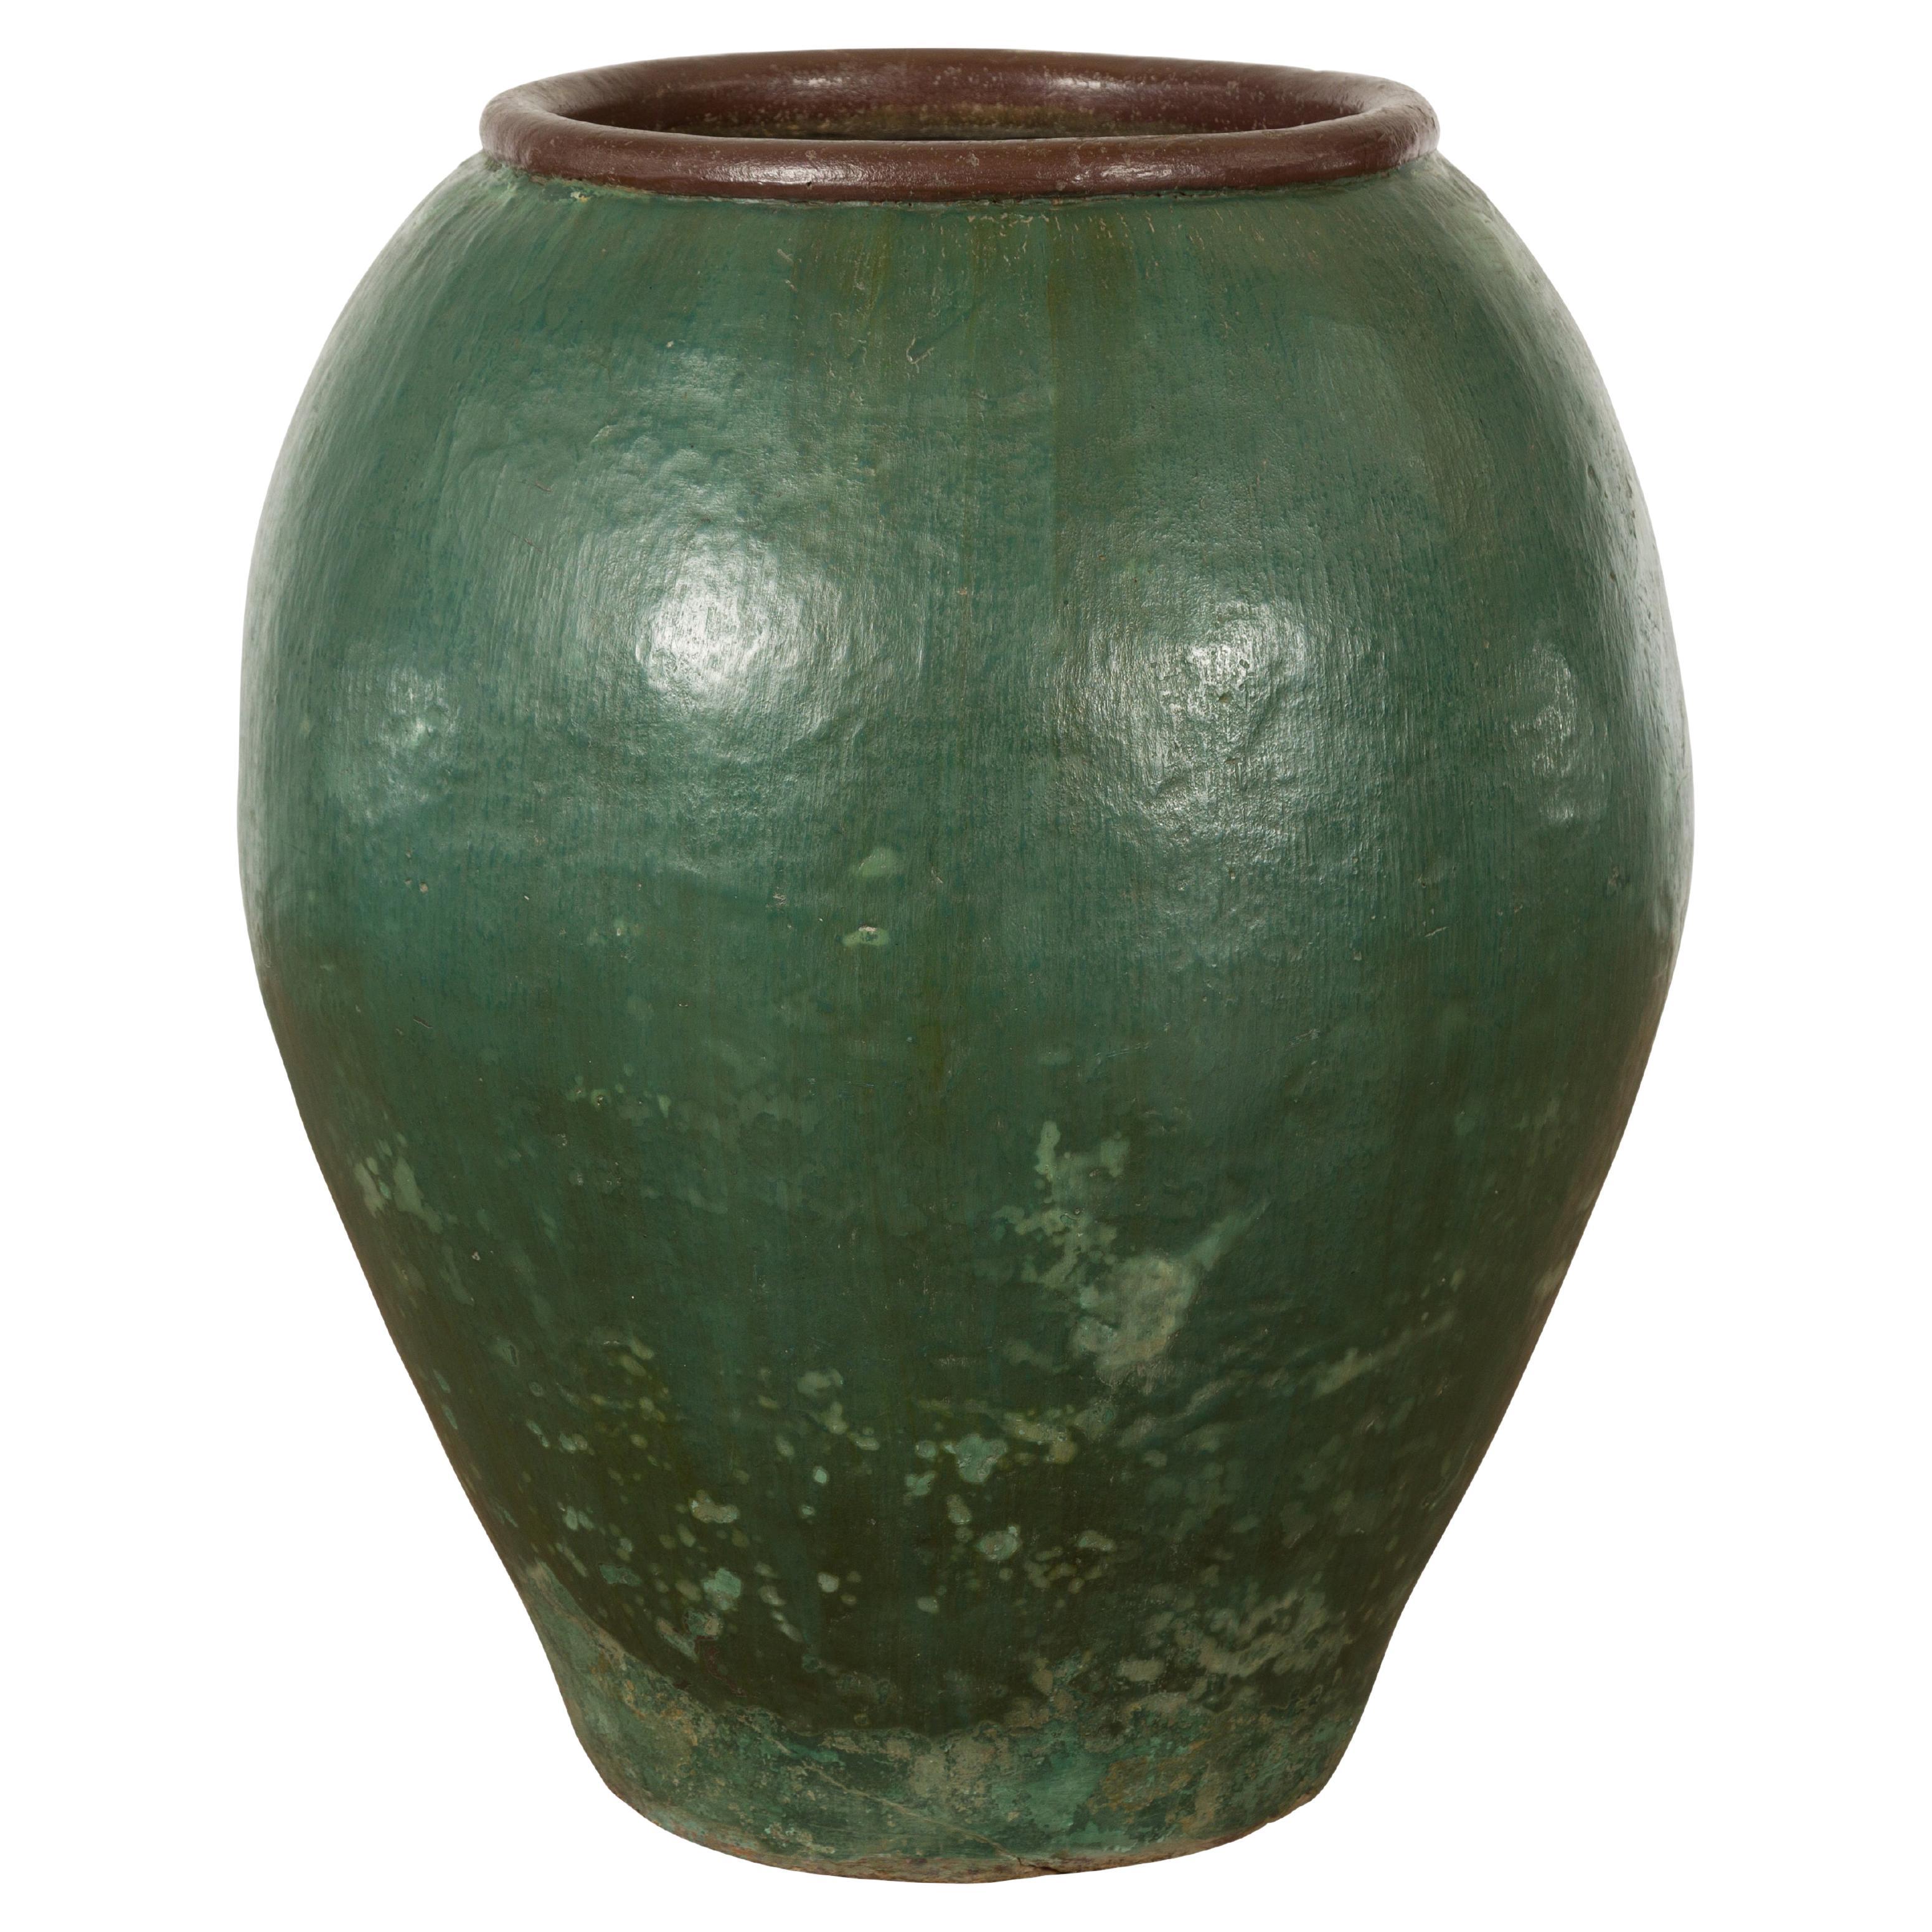 Großes thailändisches Pflanzgefäß aus grün glasierter Keramik der 1950er Jahre mit brauner Lippe und spitz zulaufendem Körper